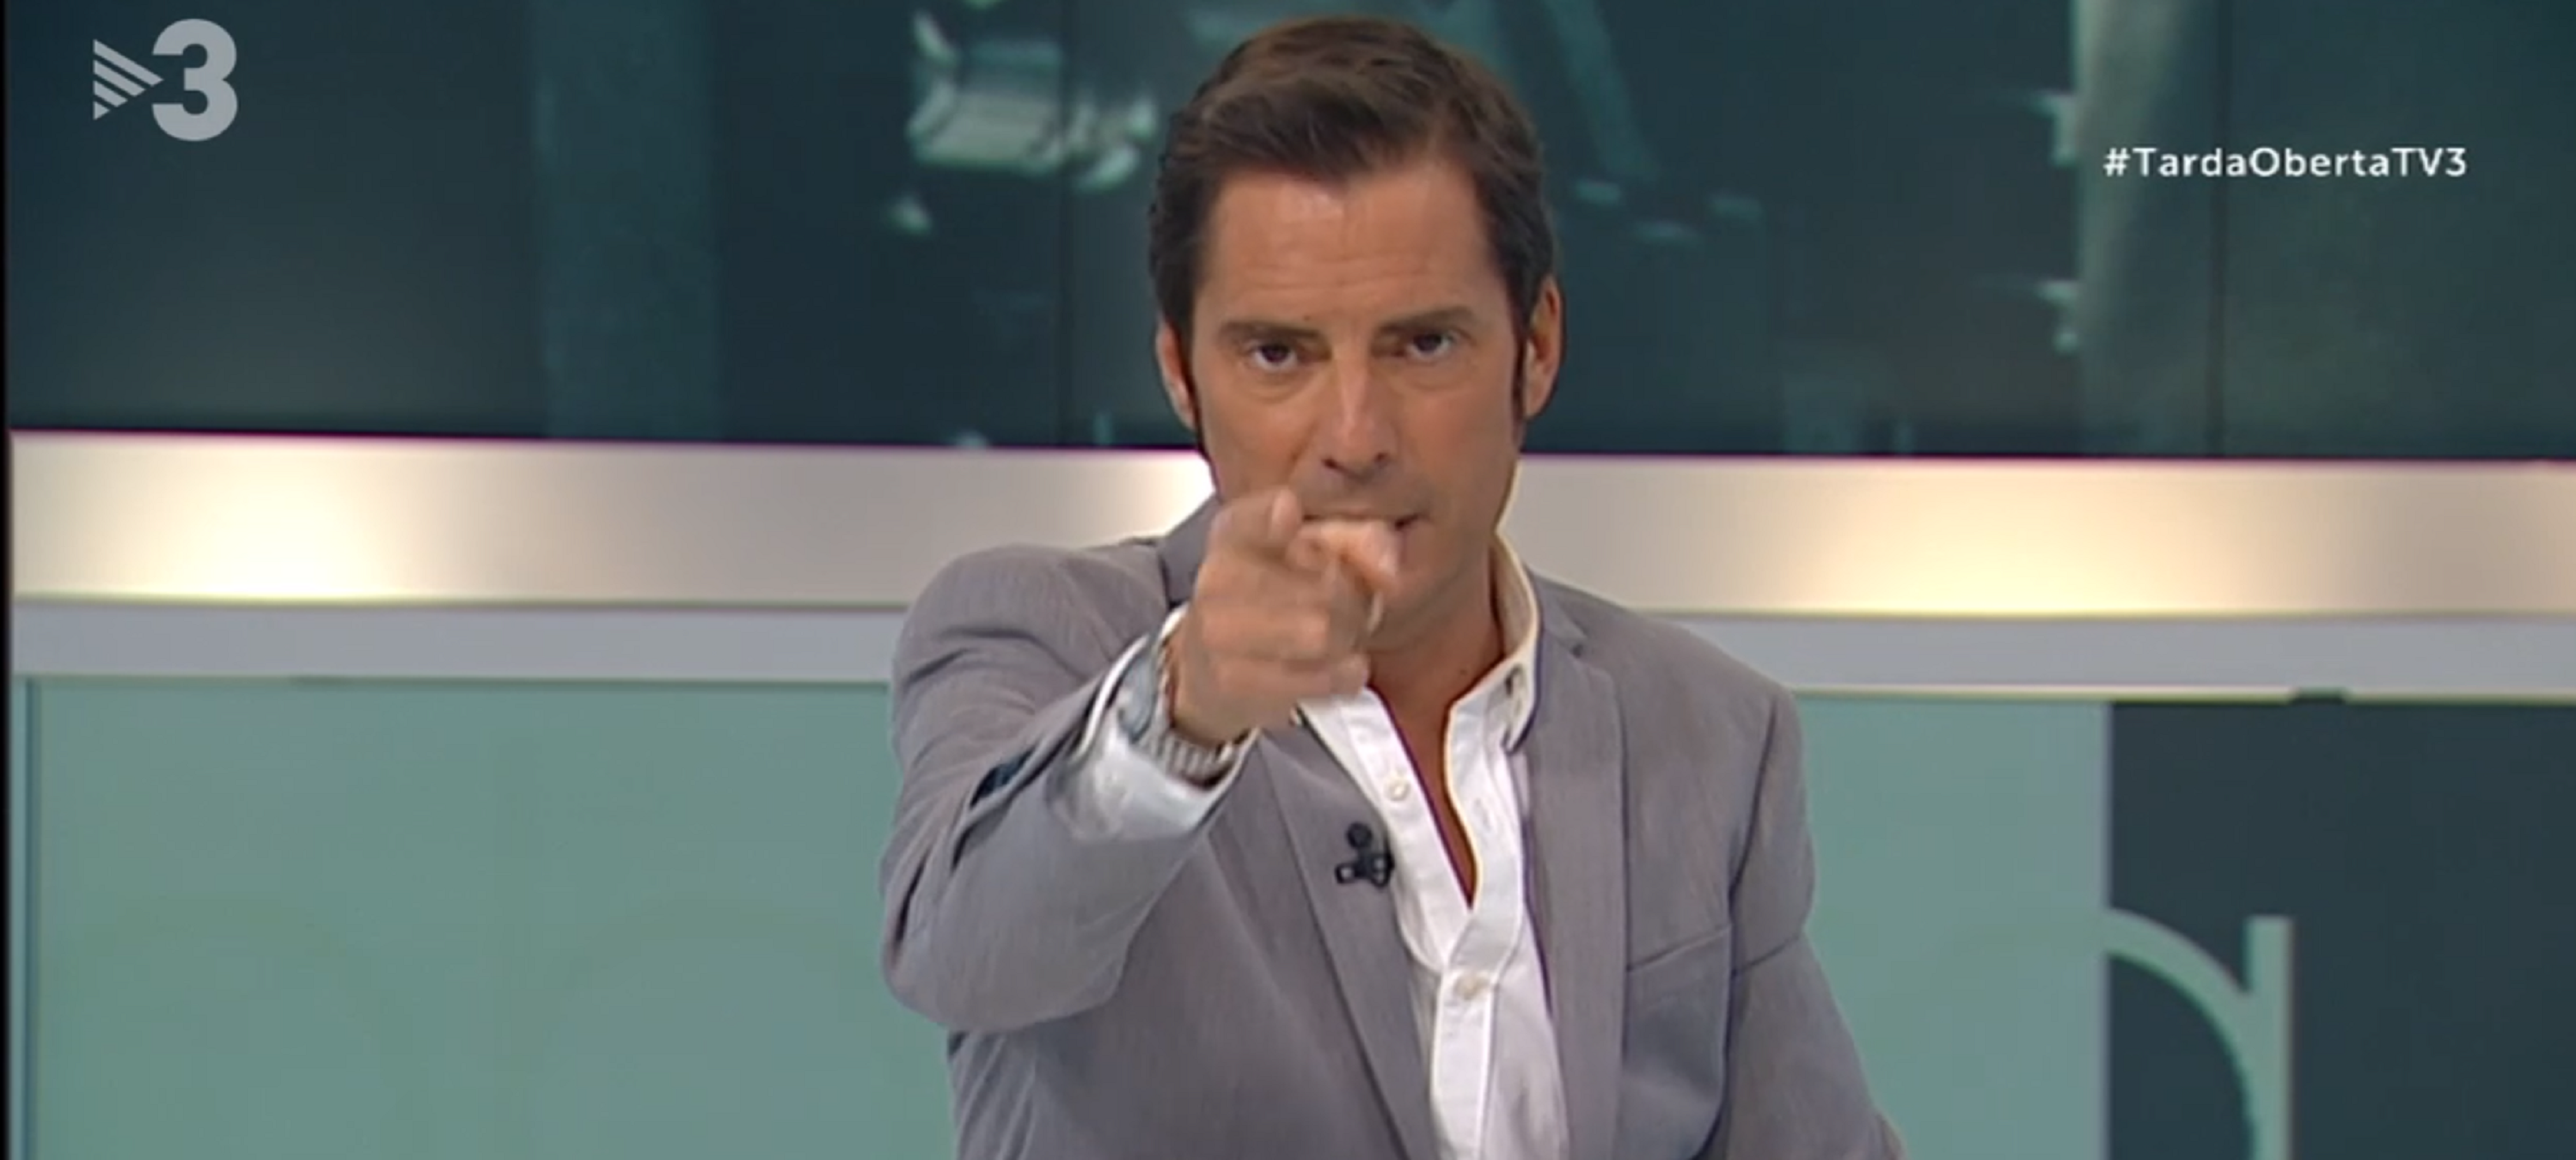 Jaume Roures recoloca a Vador Lladó de TV3 a GOL